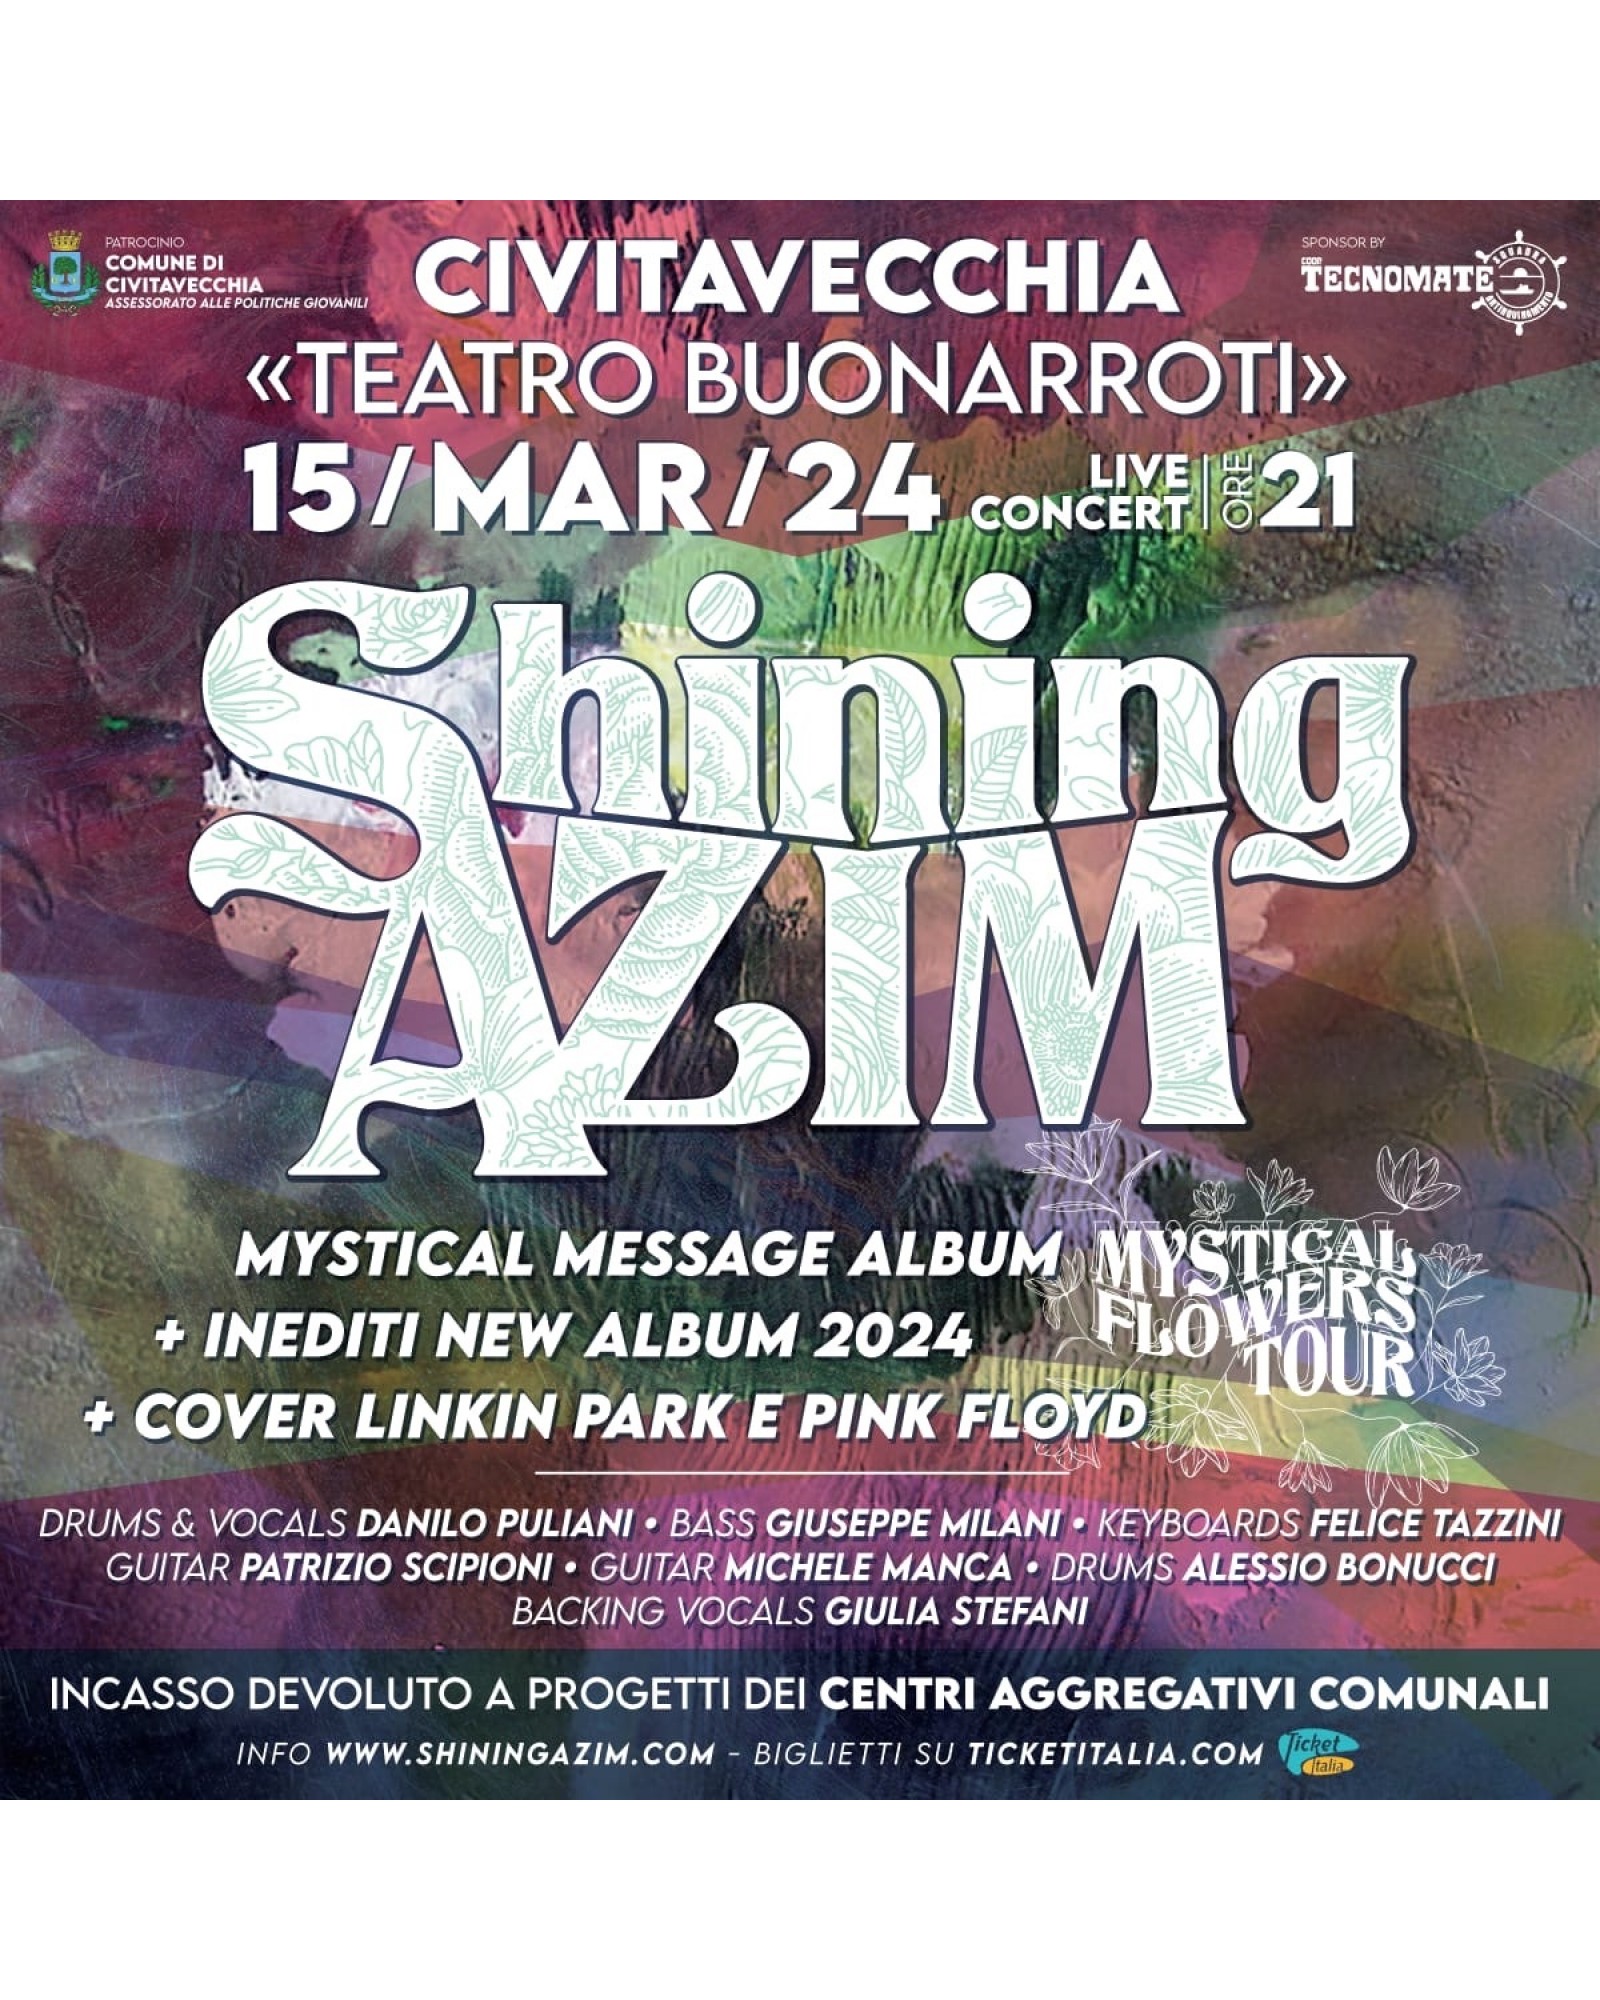 MYSTICAL FLOWERS TOUR - Civitavecchia 2024